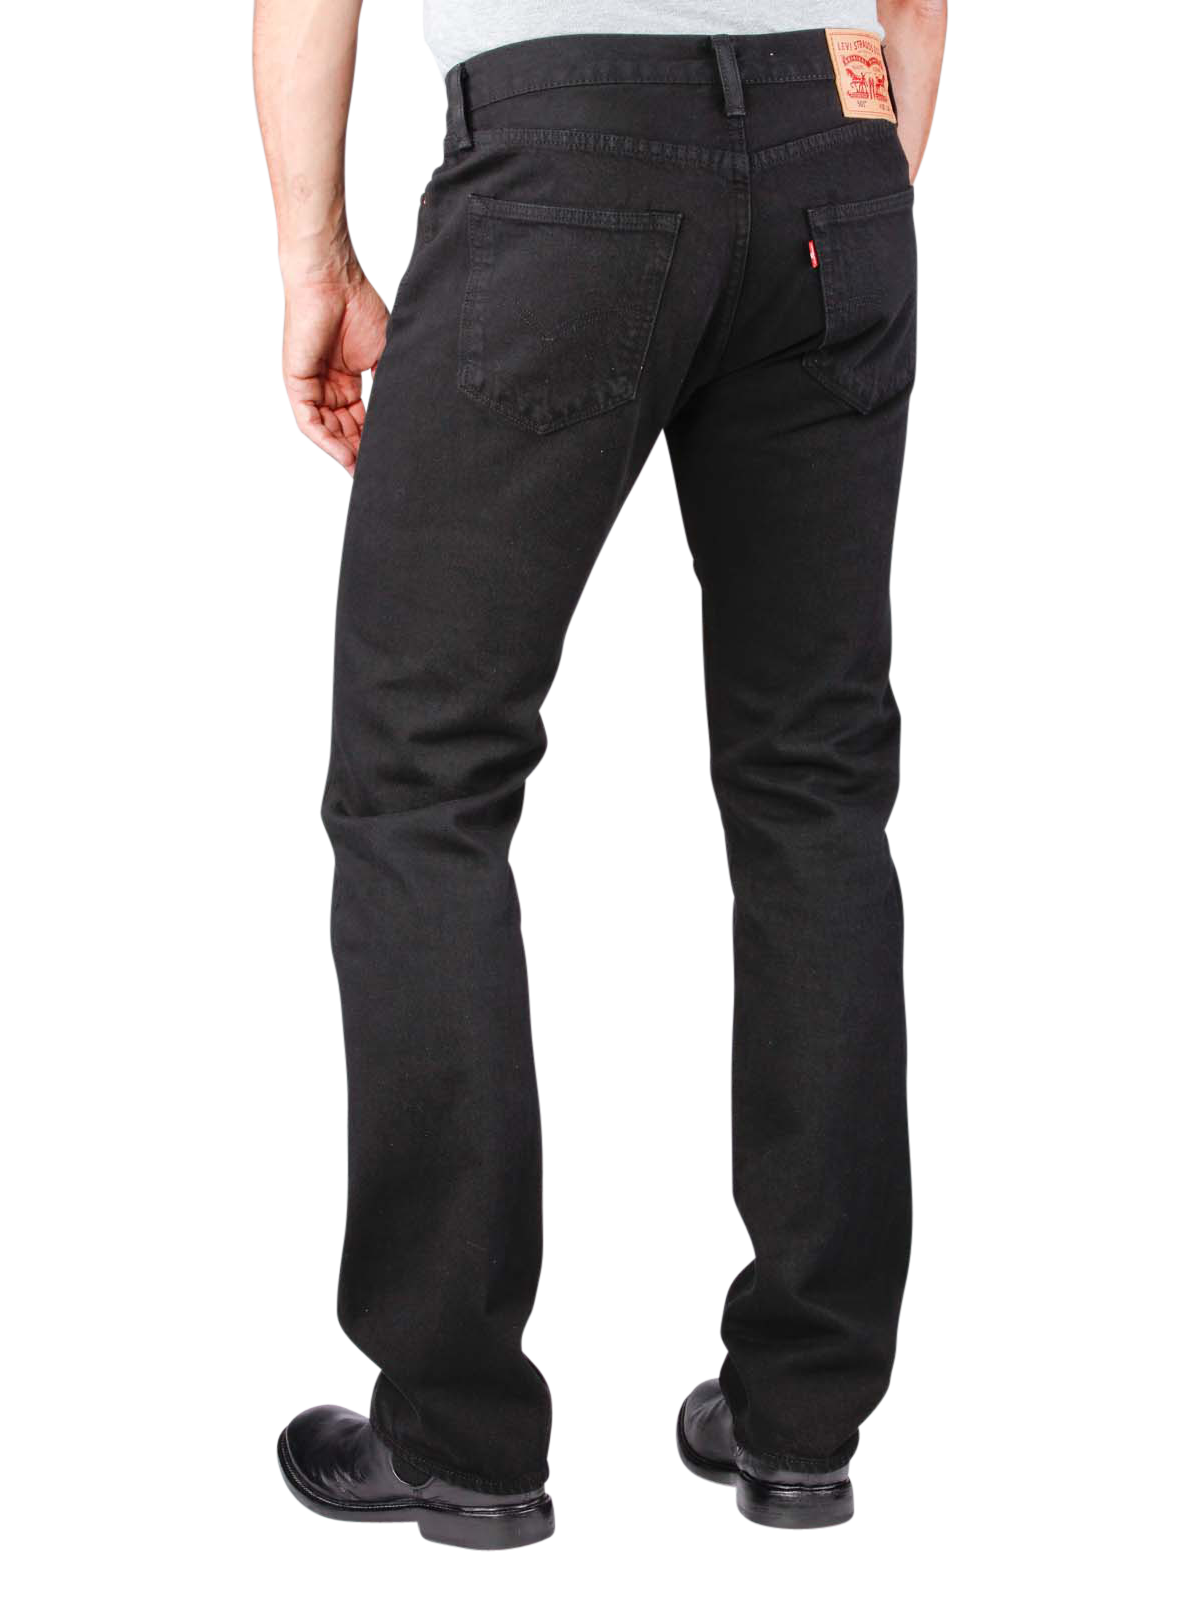 Levi‘s 501 Jeans black | Gratis Lieferung - JEANS.CH - Levi Strauss 501 Jeans